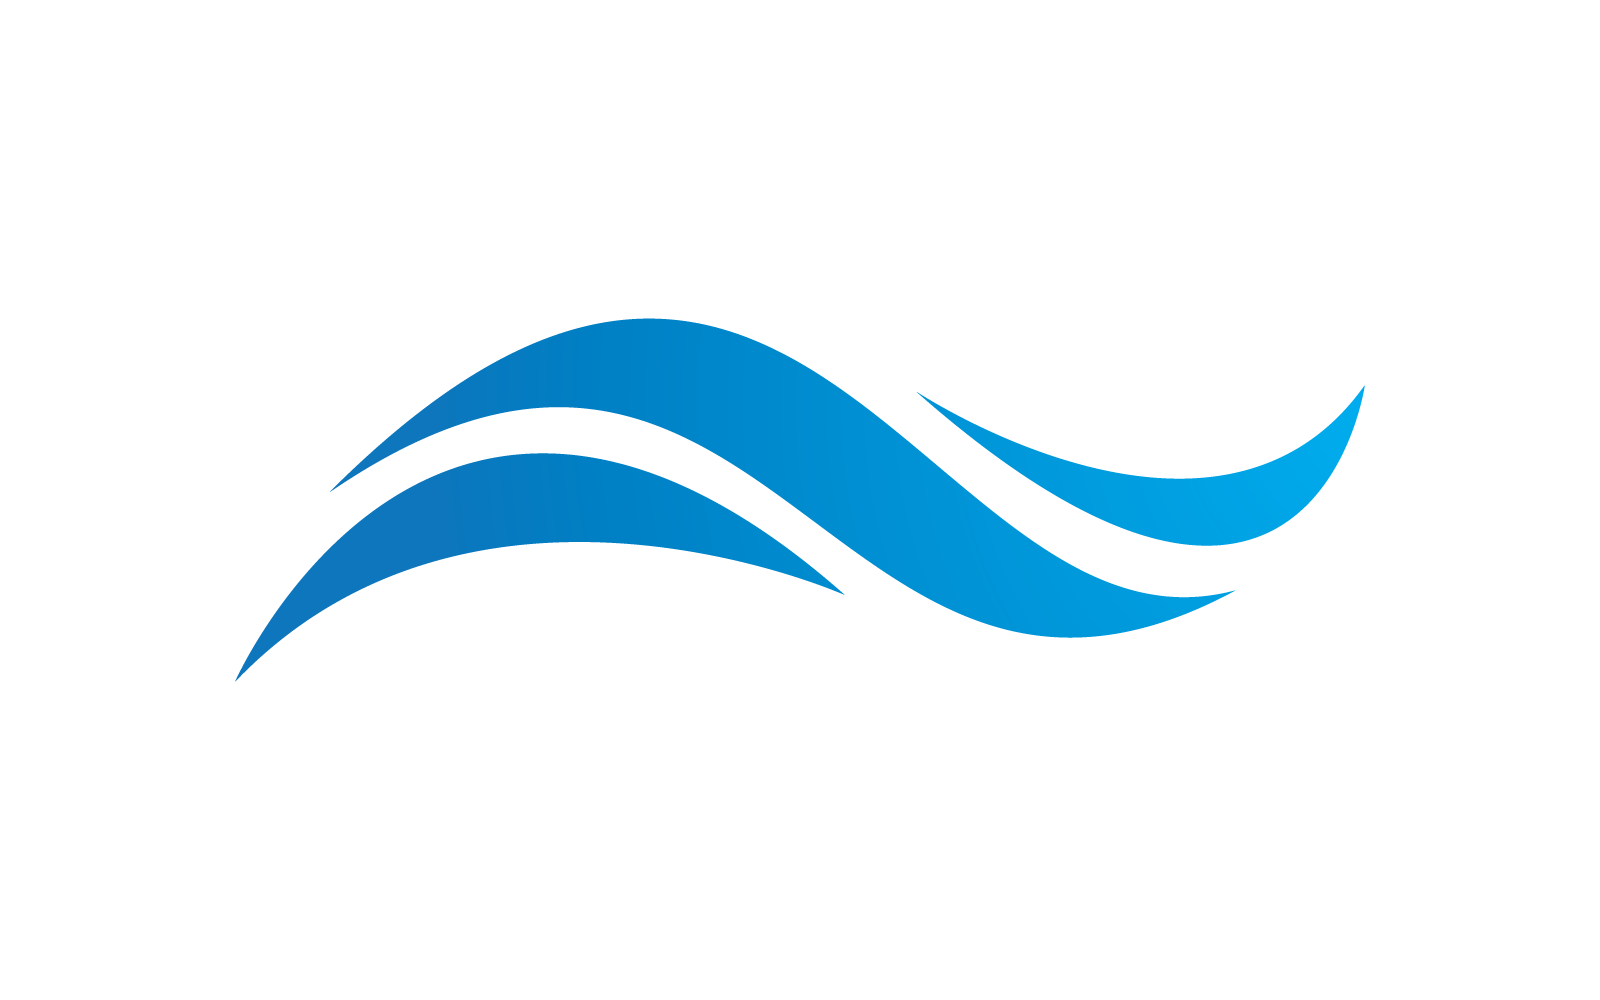 Water Wave illustration logo vector flat design eps 10